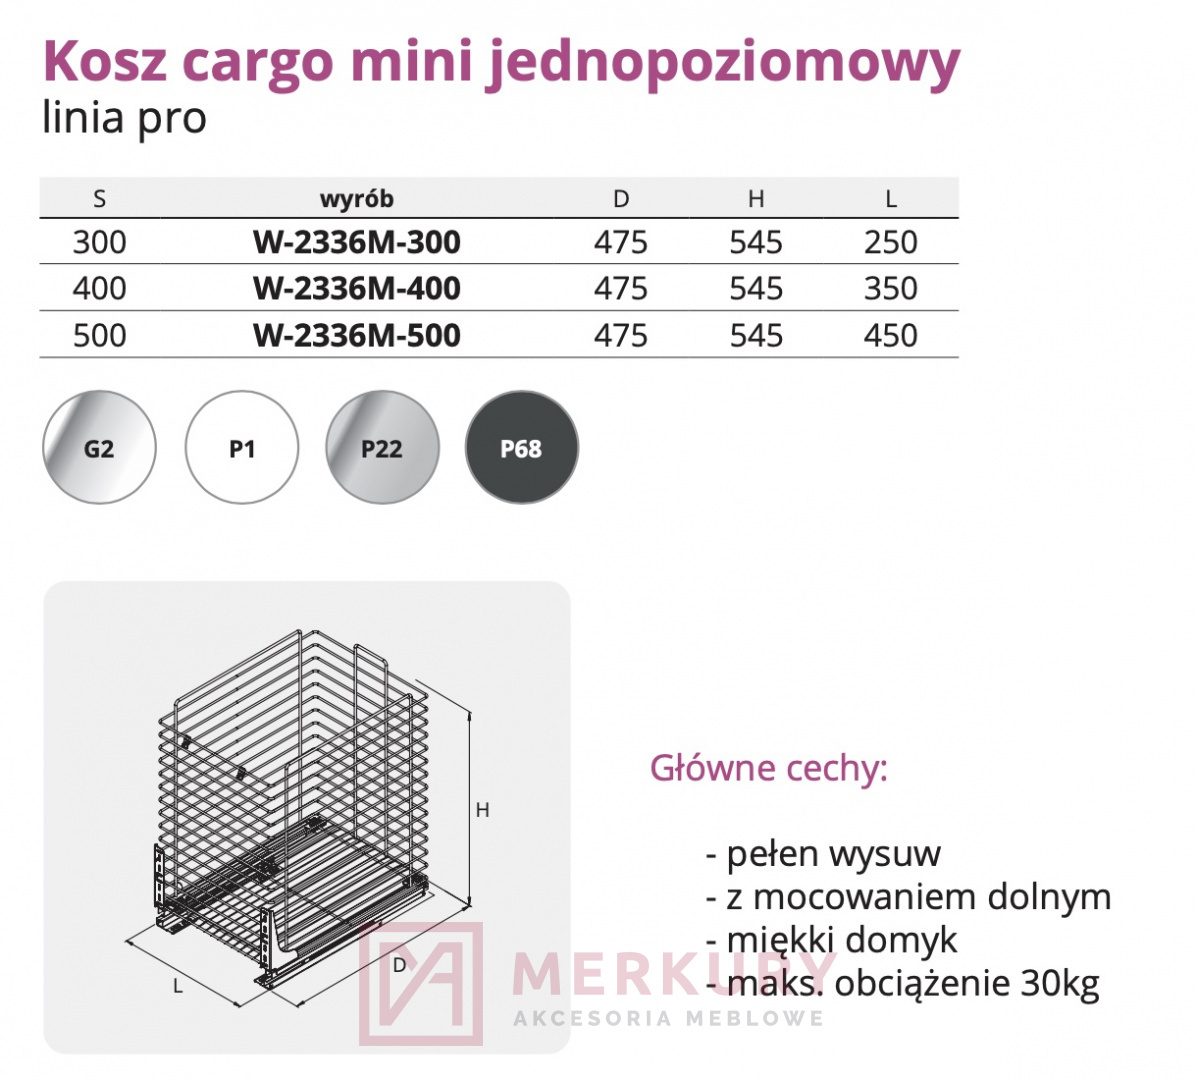 Kosz Cargo mini jednopoziomowy W-2336M, srebrny, 600mm, linia PRO SKLEP INTERNETOWY MERKURY AKCESORIA MEBLOWE MARIUSZ ADAMCZYK